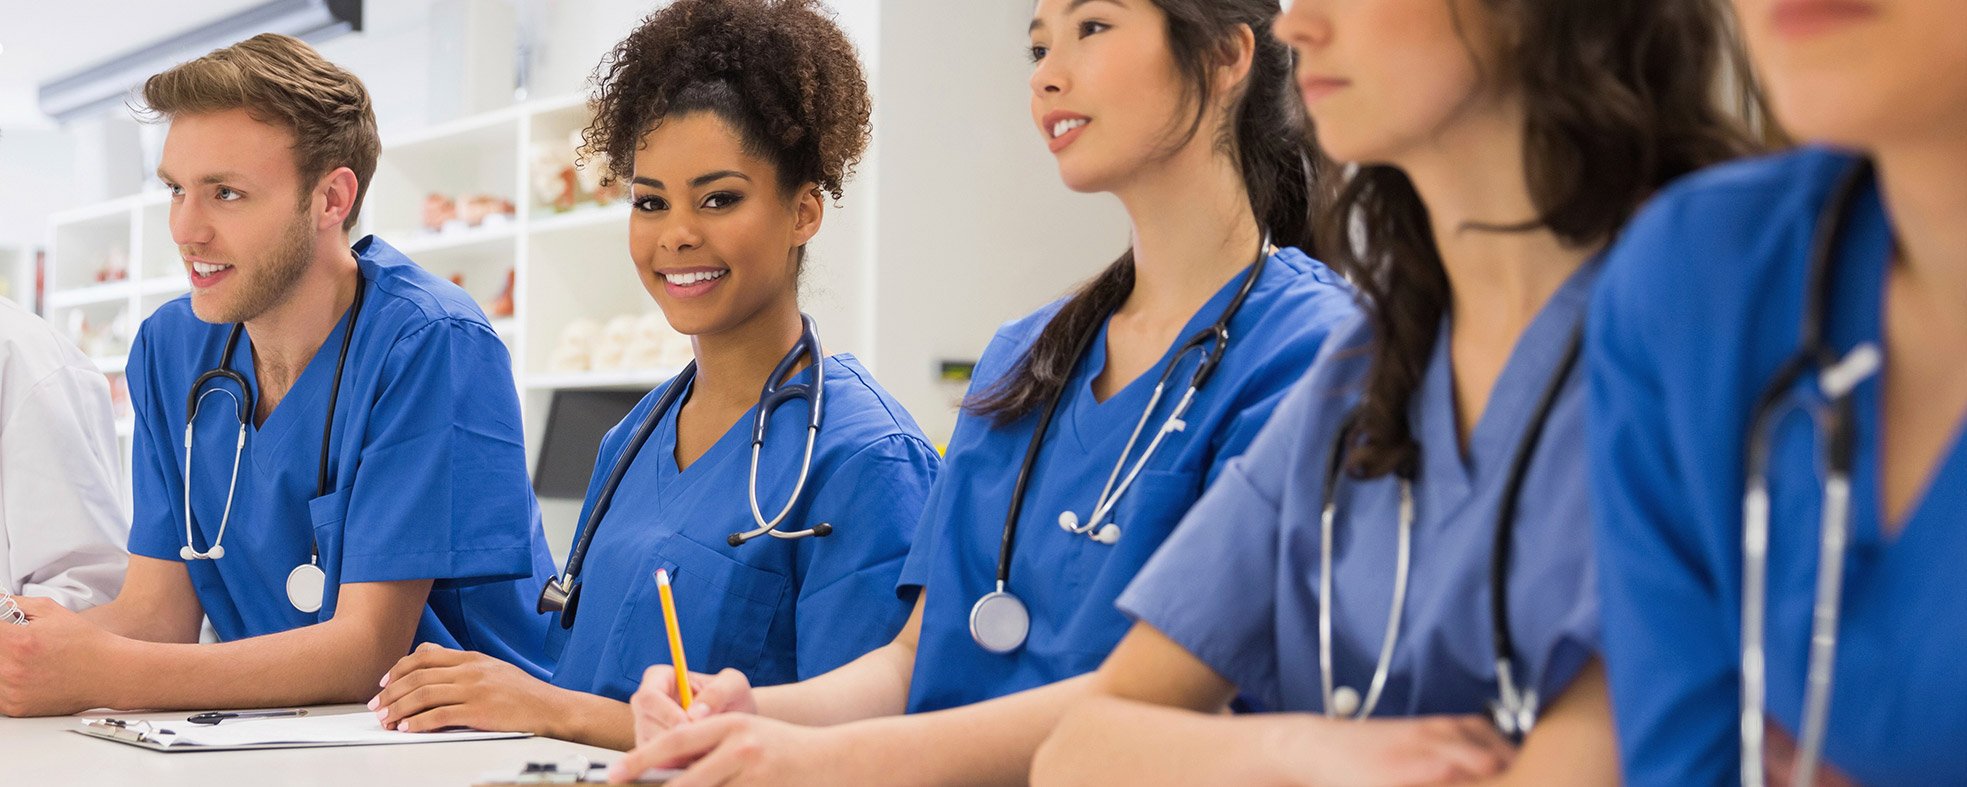 how to choose nursing career